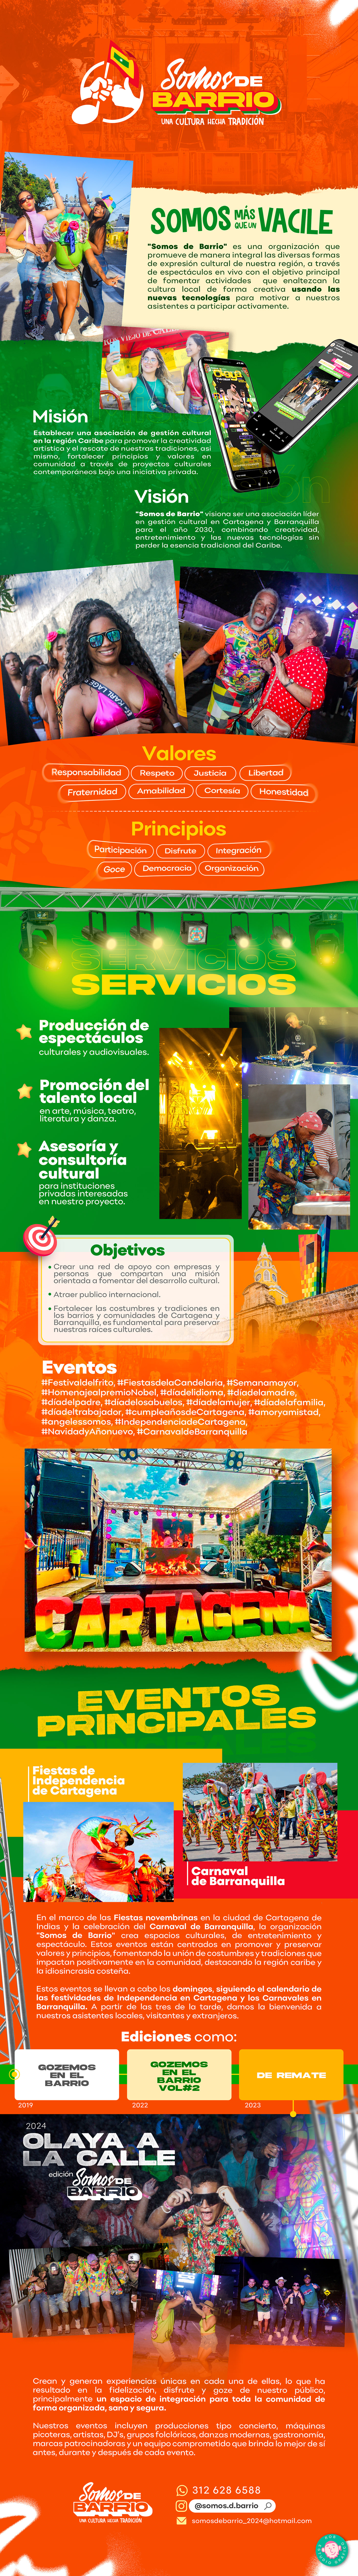 barranquilla Cartagena barrio Carnaval de Barranquilla portafolio color brochure Social media post disponible somosdebarrio